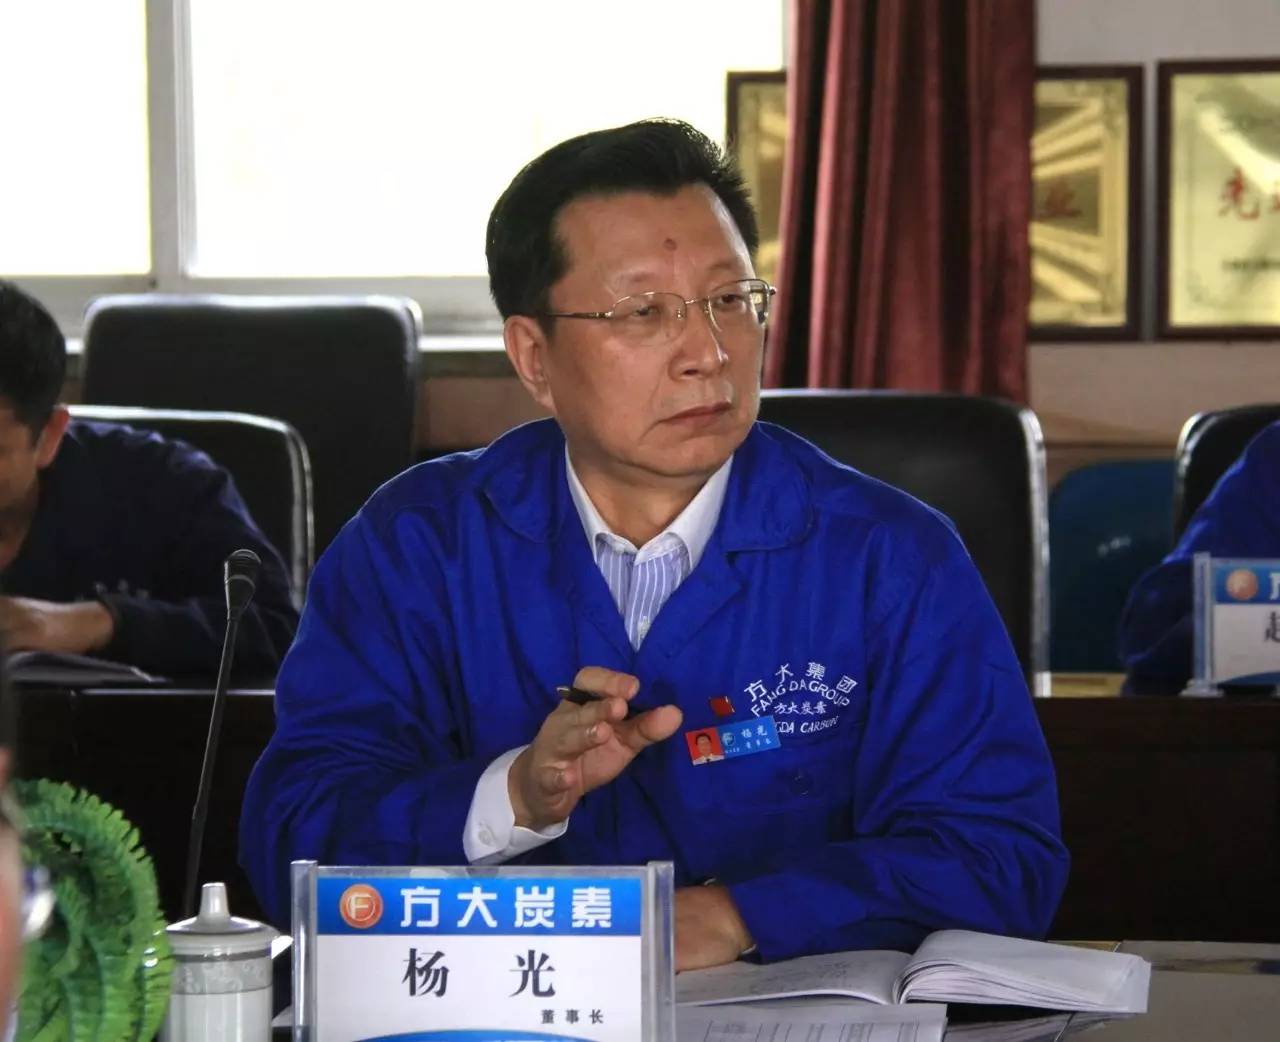 董事长杨光在公司周行政例会上要求全体干部 继续转变观念 推进管理